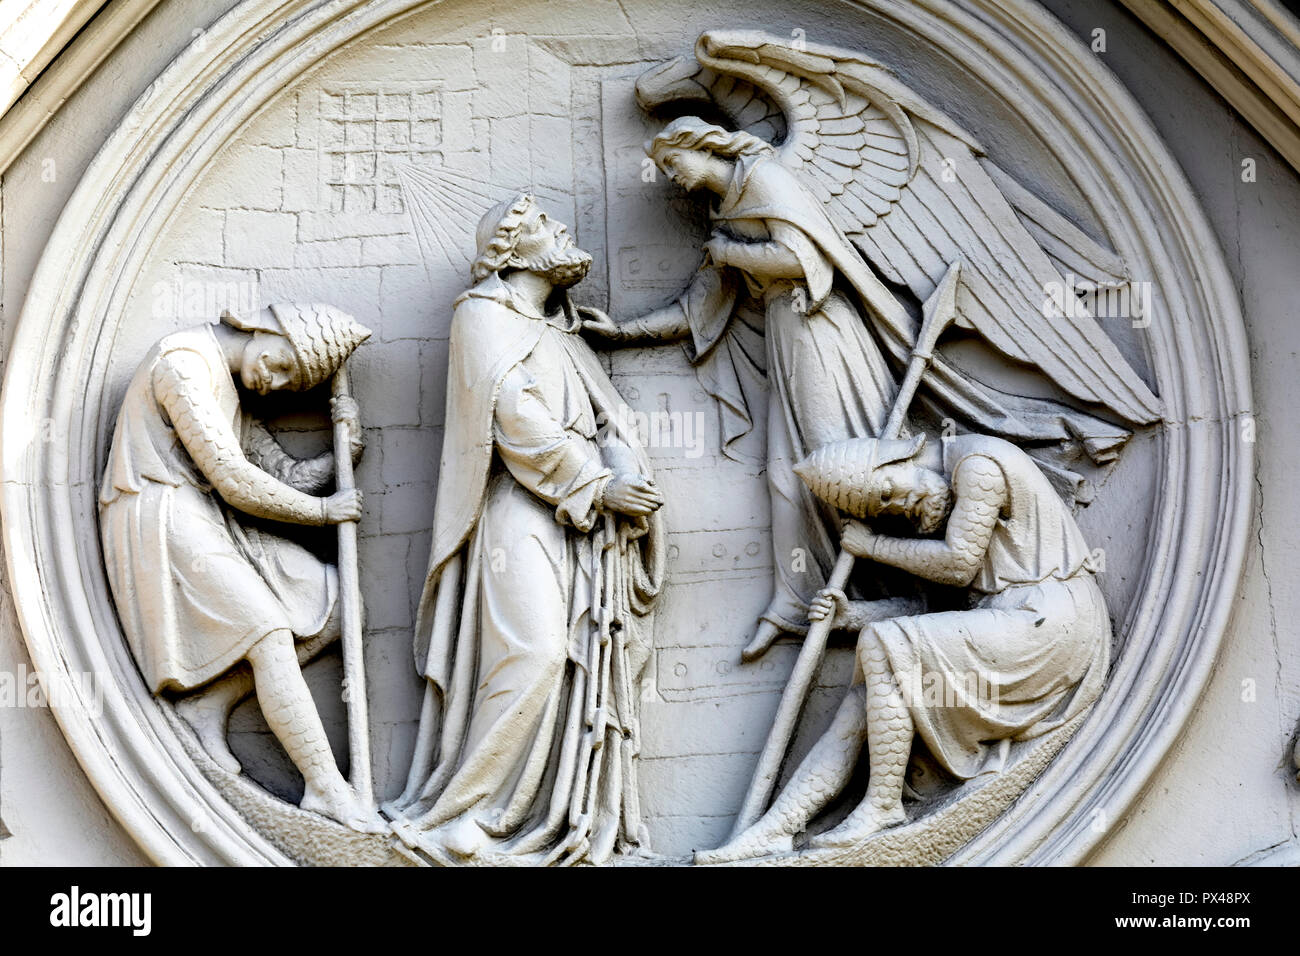 La cathédrale catholique, Belfast, Irlande du Nord. Relief représentant Jésus Christ avec un ange pendant sa Passion. L'Ulster, Royaume-Uni Banque D'Images